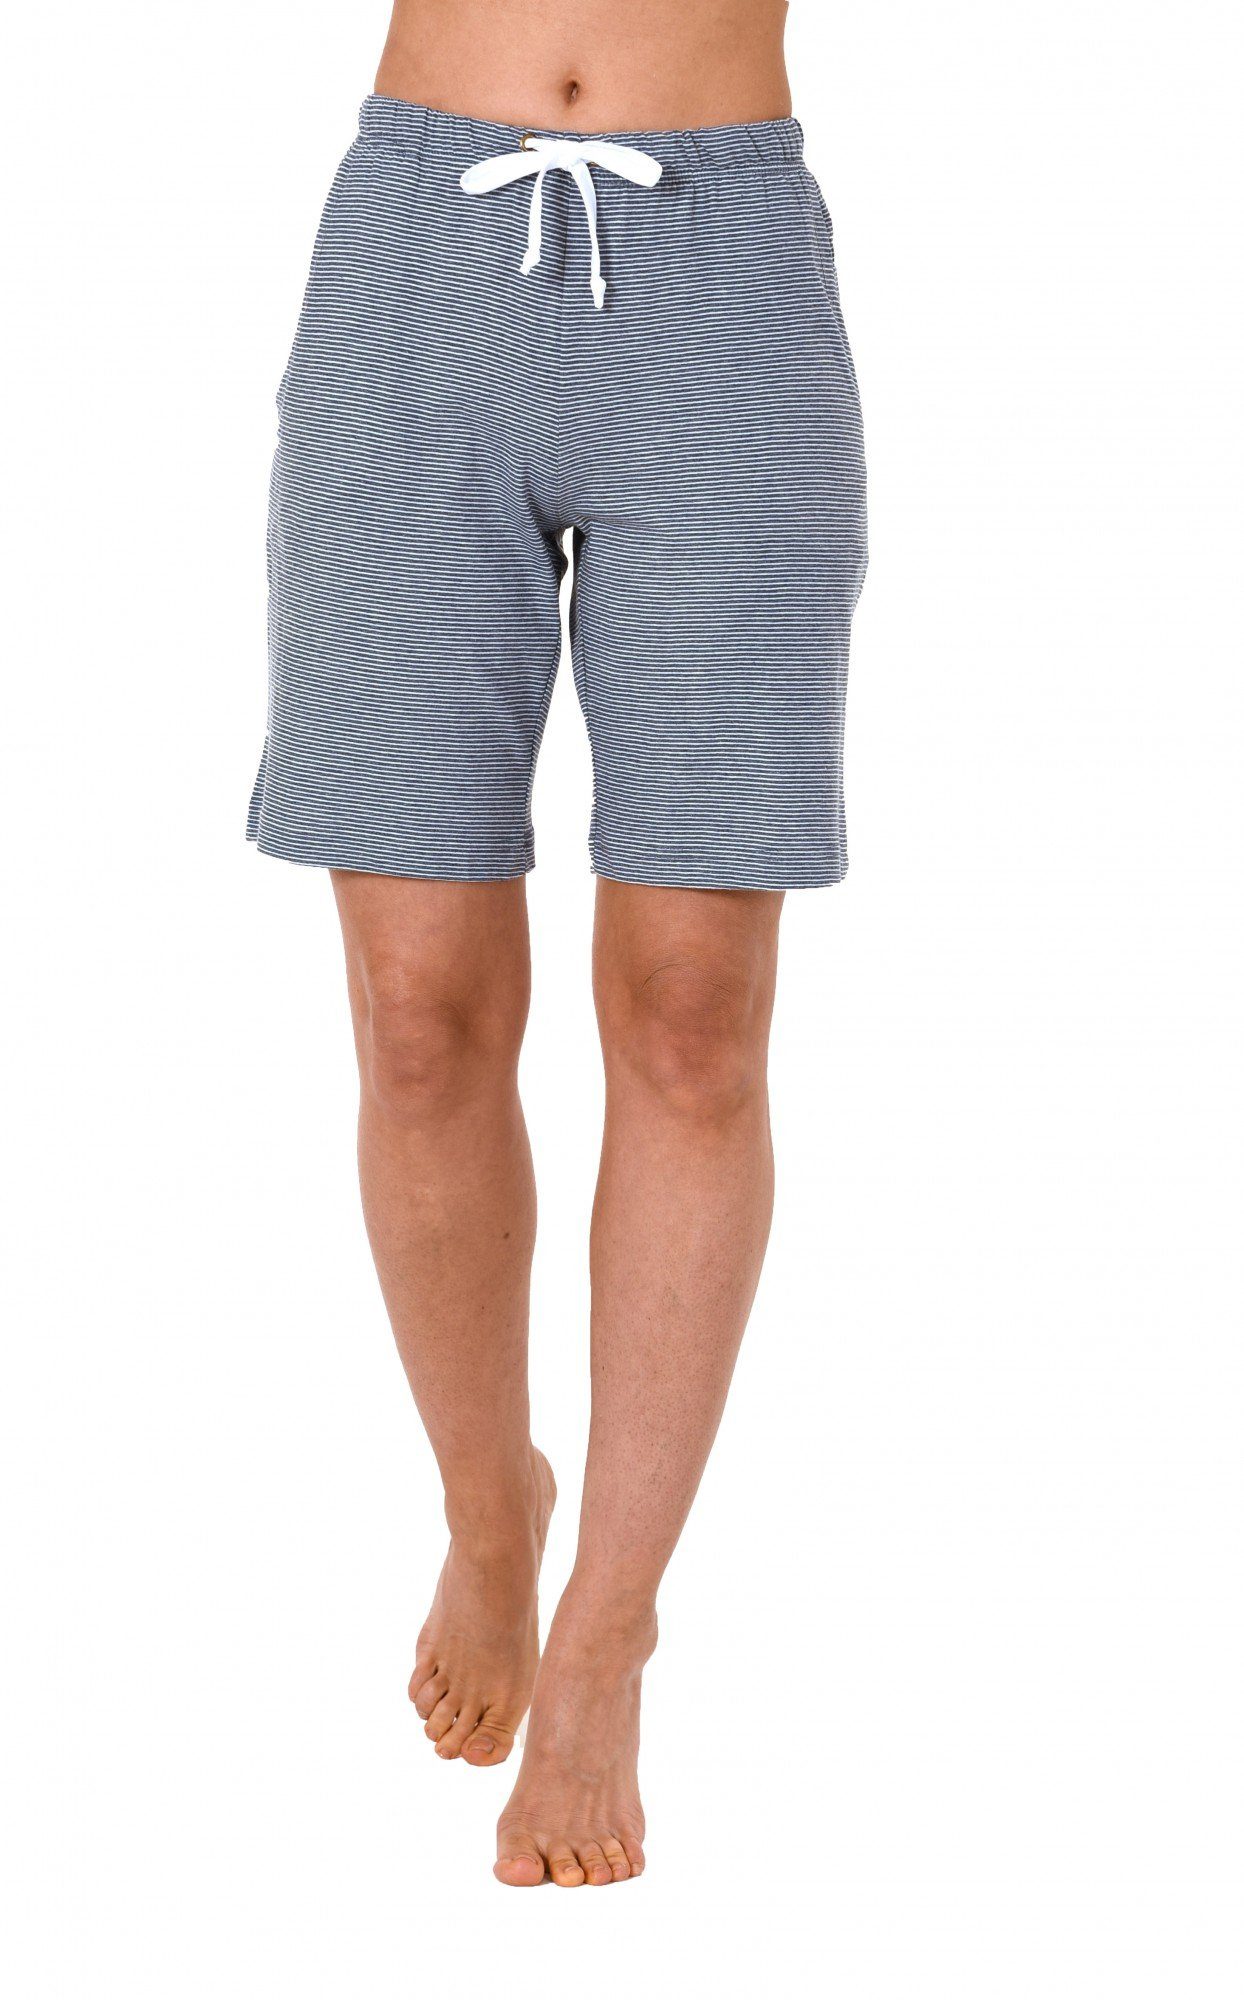 Normann Relaxanzug Pyjama Bermuda kurze Hose gestreift Mix & Match ideal zum kombinieren